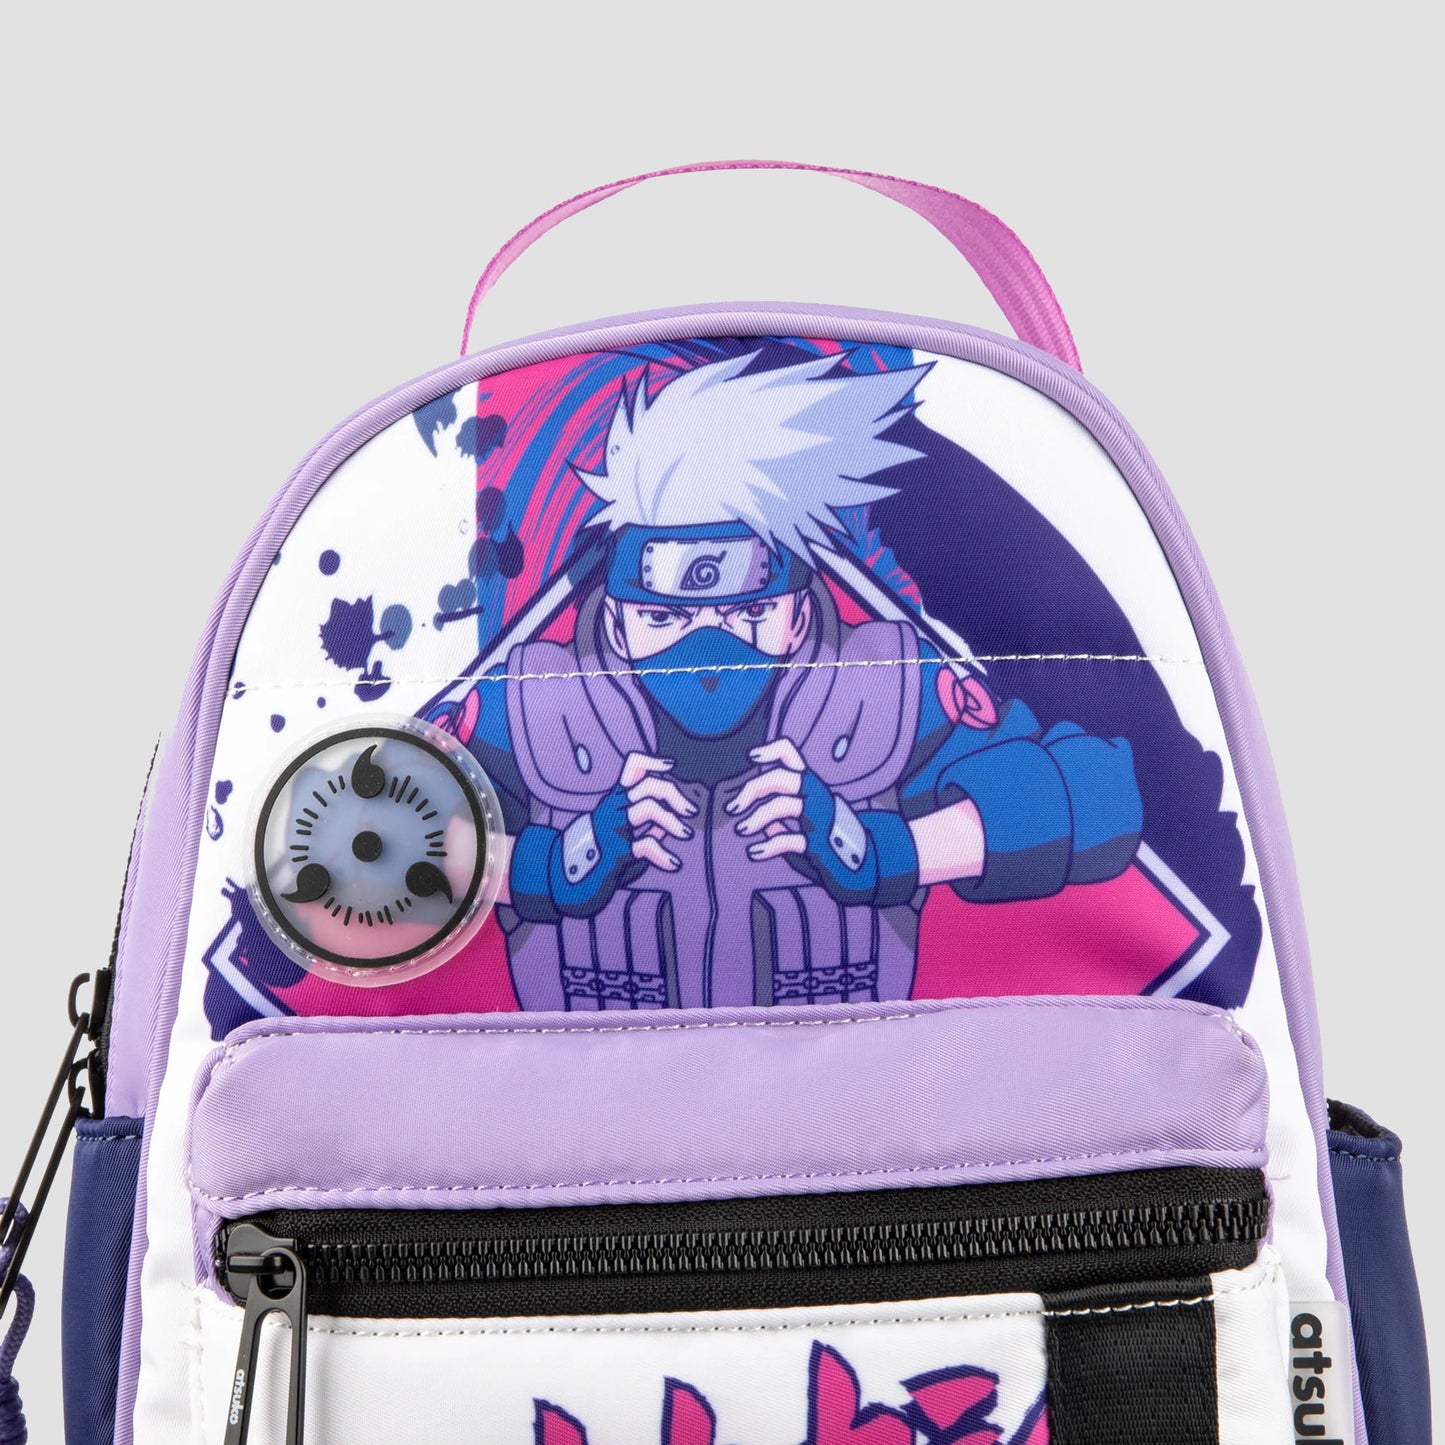 Kakashi (Naruto Shippuden) Convertible Mini Backpack by Atsuko